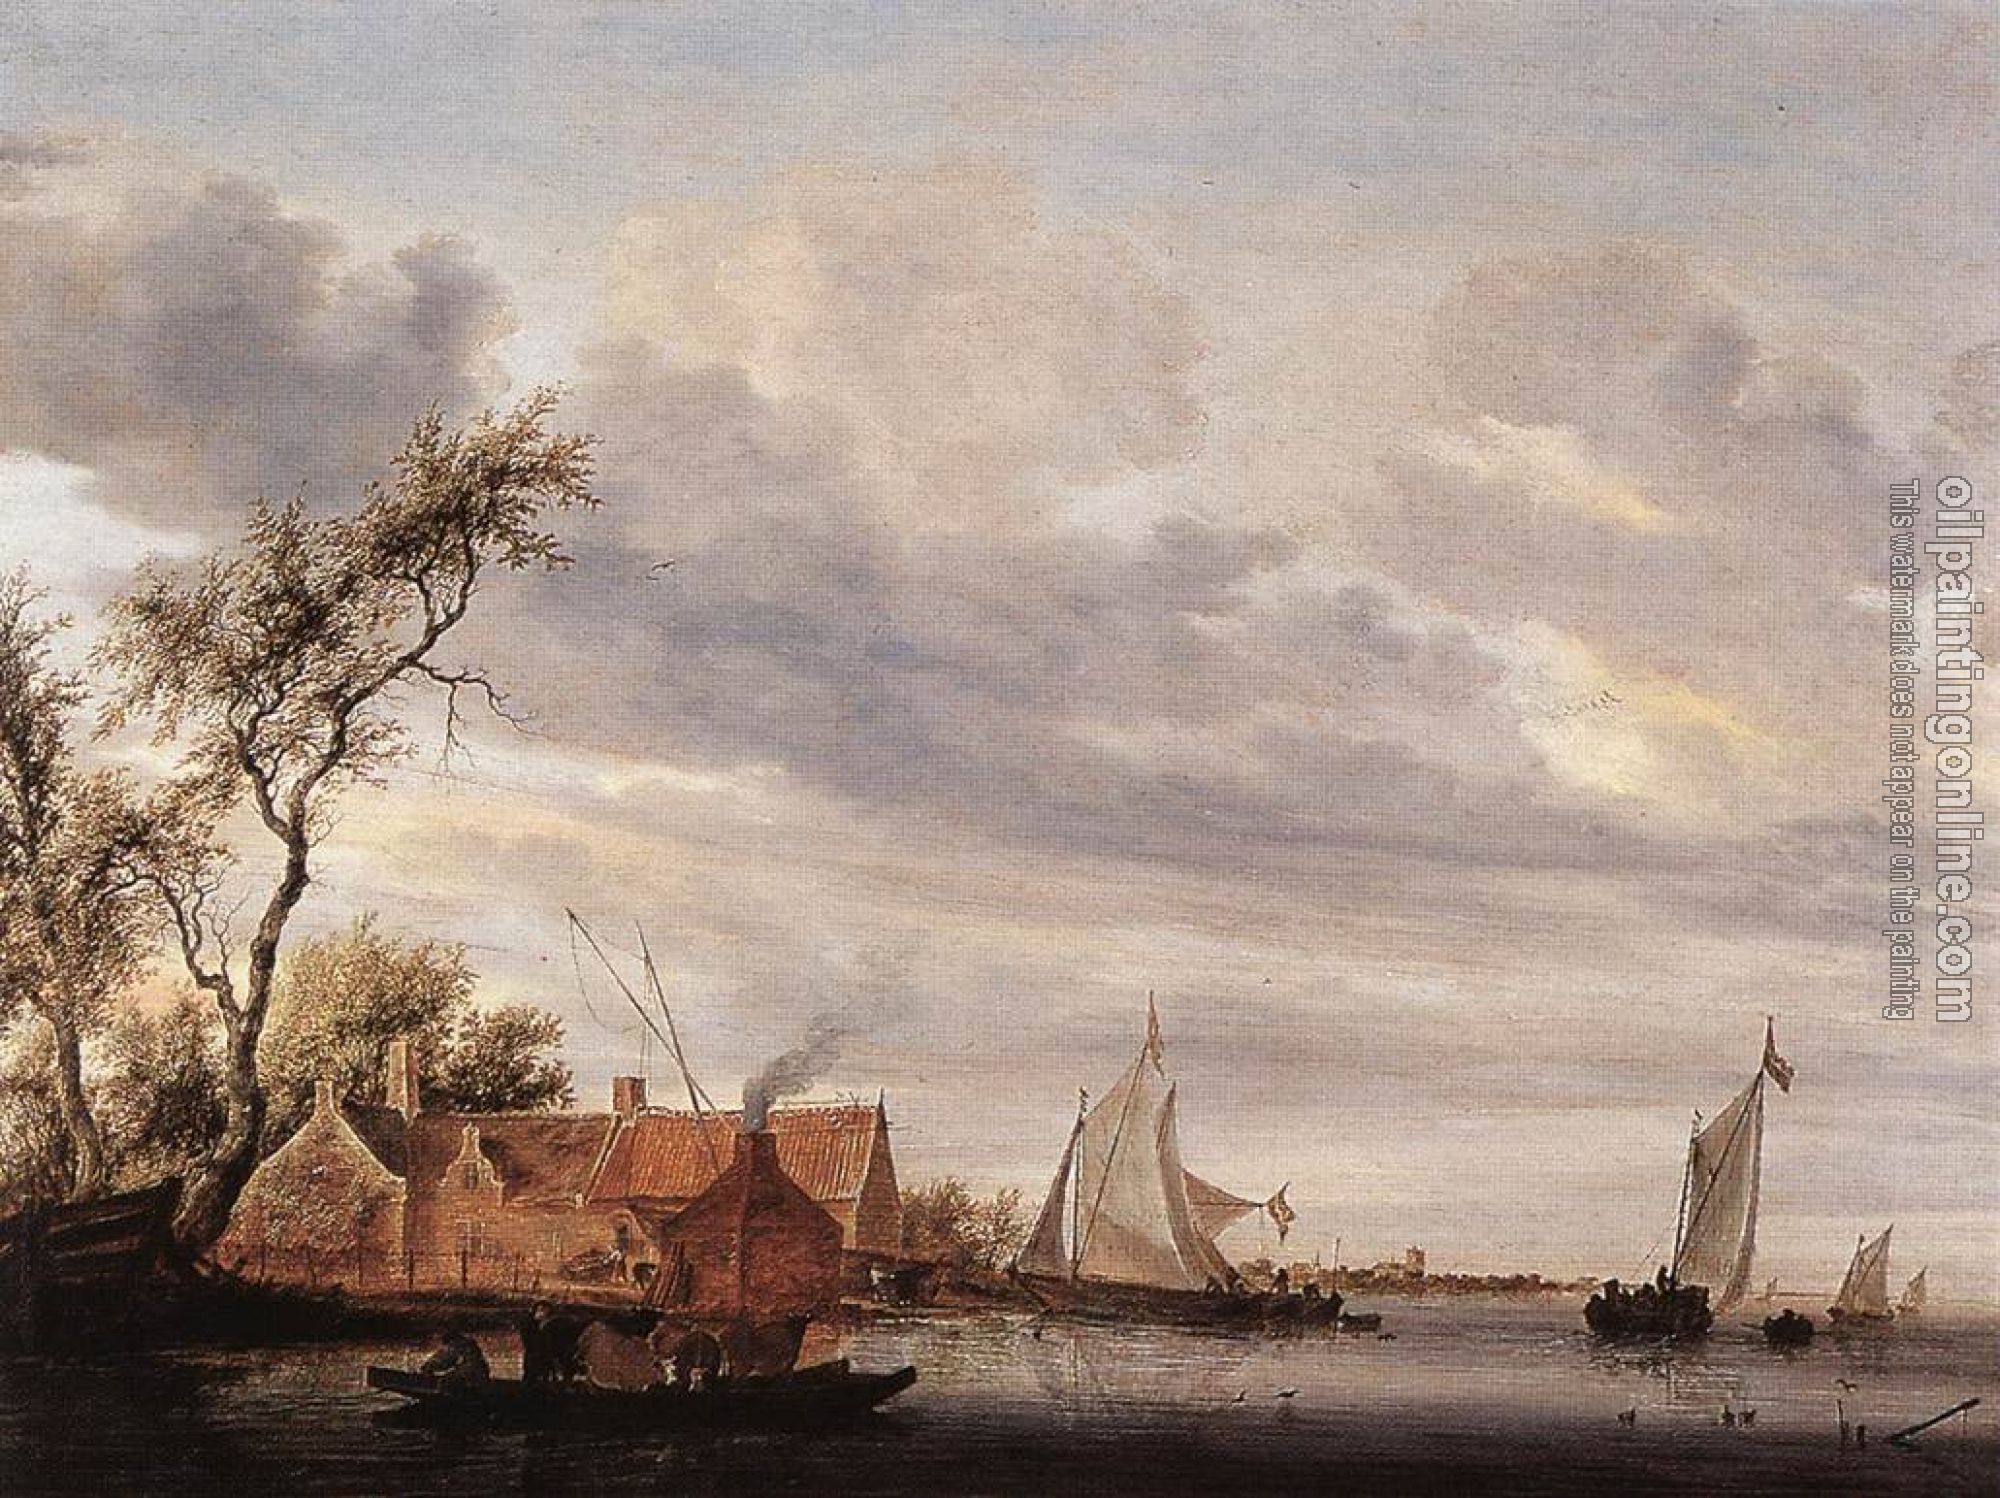 Ruysdael, Salomon van - River Scene with Farmstead